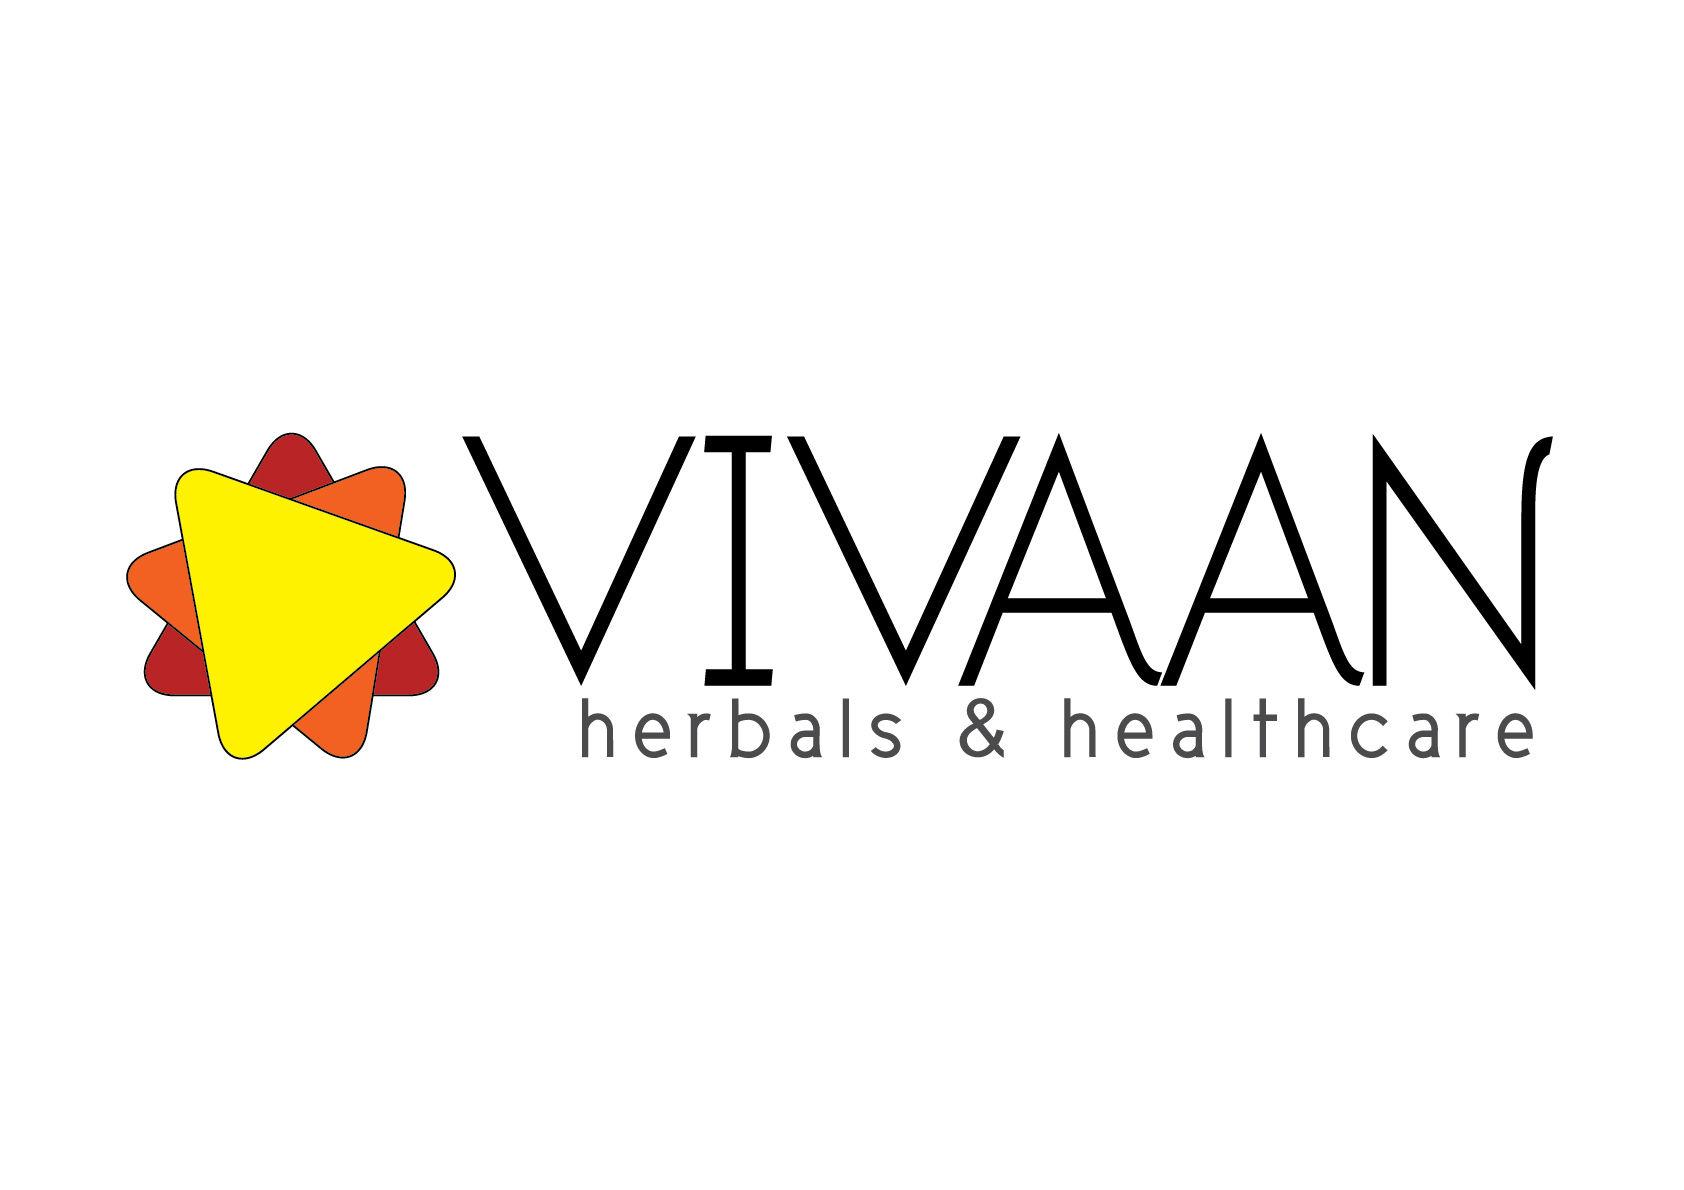 VIVAAN HERBALS & HEALTHCARE